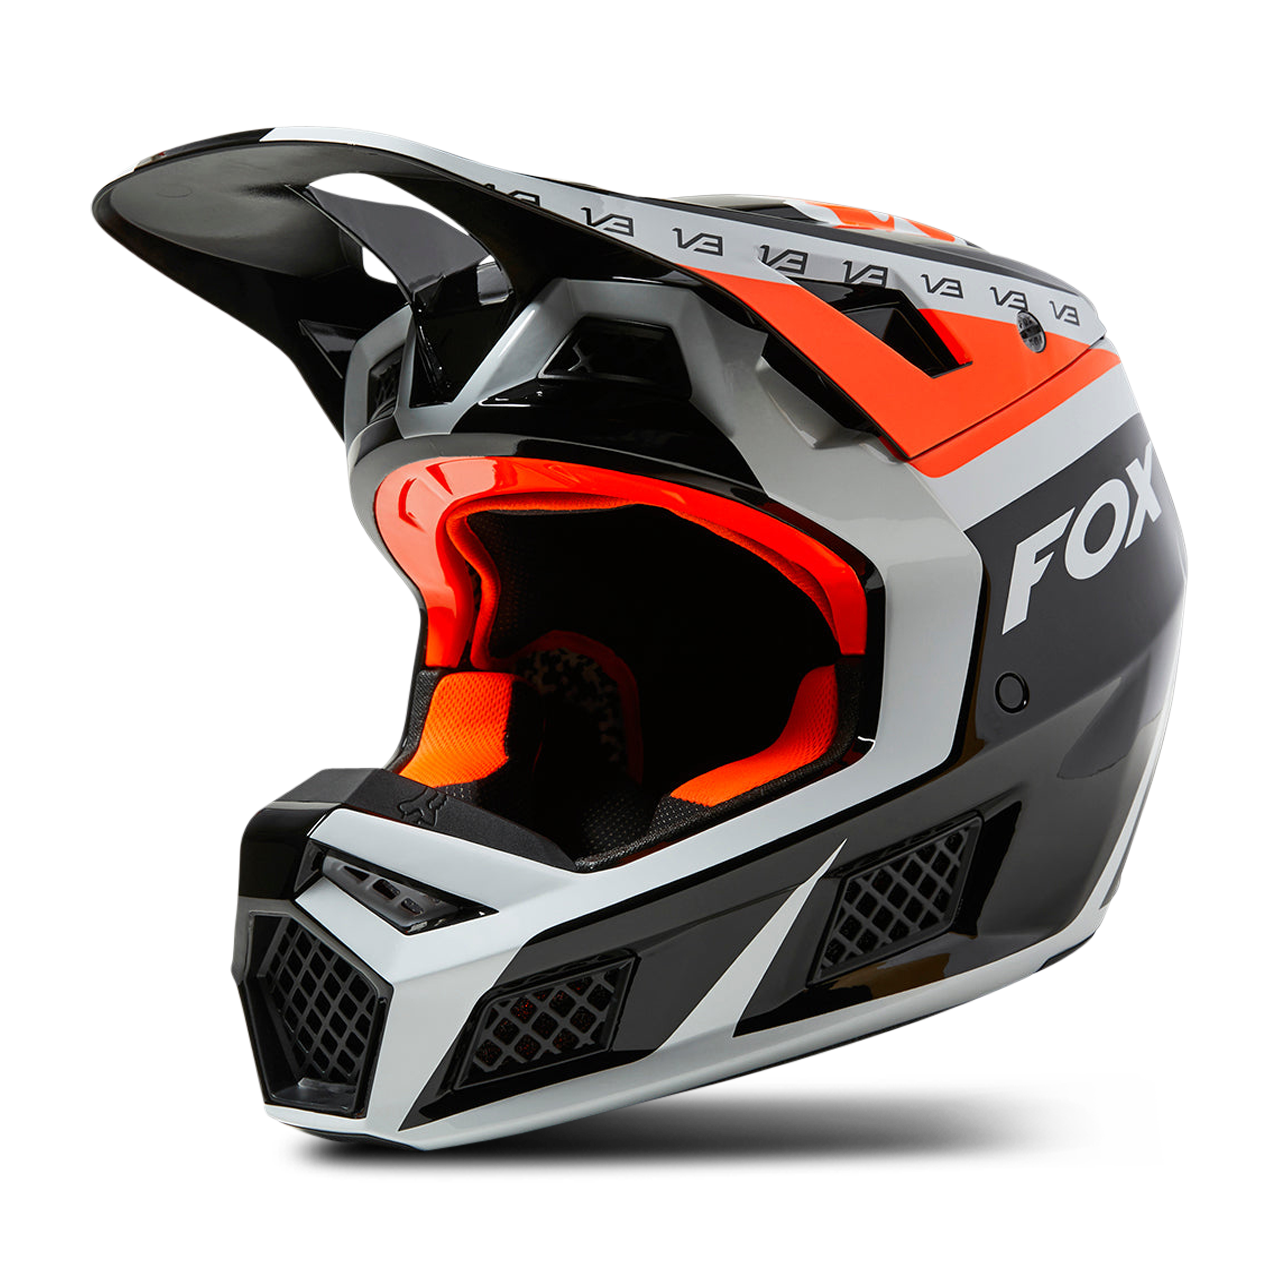 FOX V3 RS DVIDE MX Helmet BlackWhiteOrange Now 30 Savings xlmoto